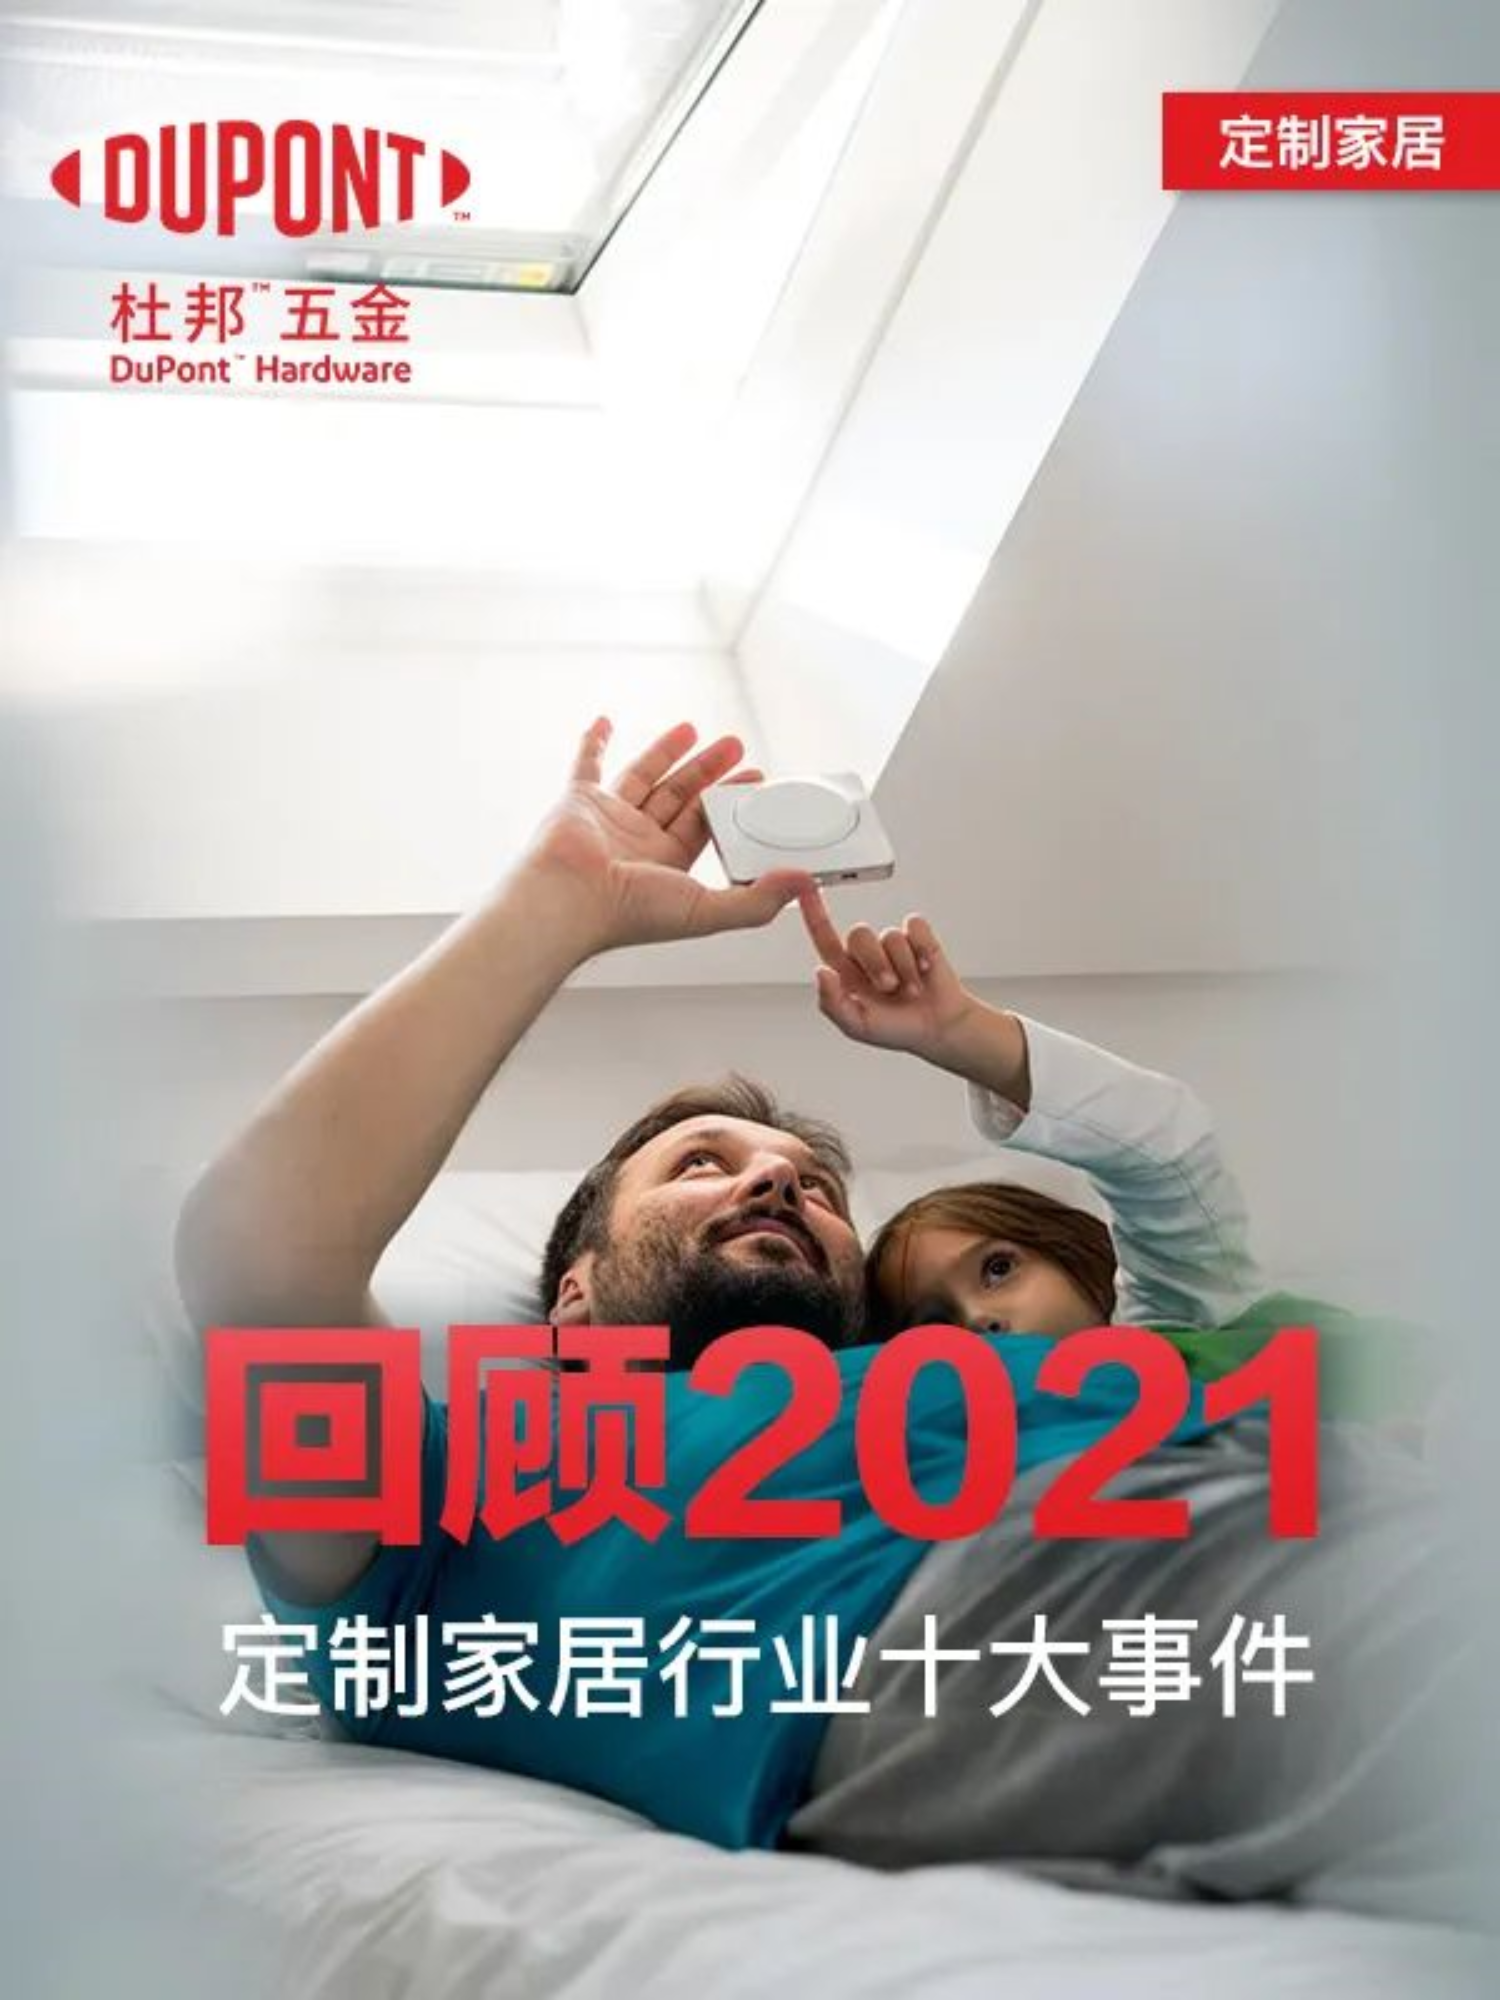 Revisió dels 10 millors mobles per a la llar personalitzats a la Xina el 2021!